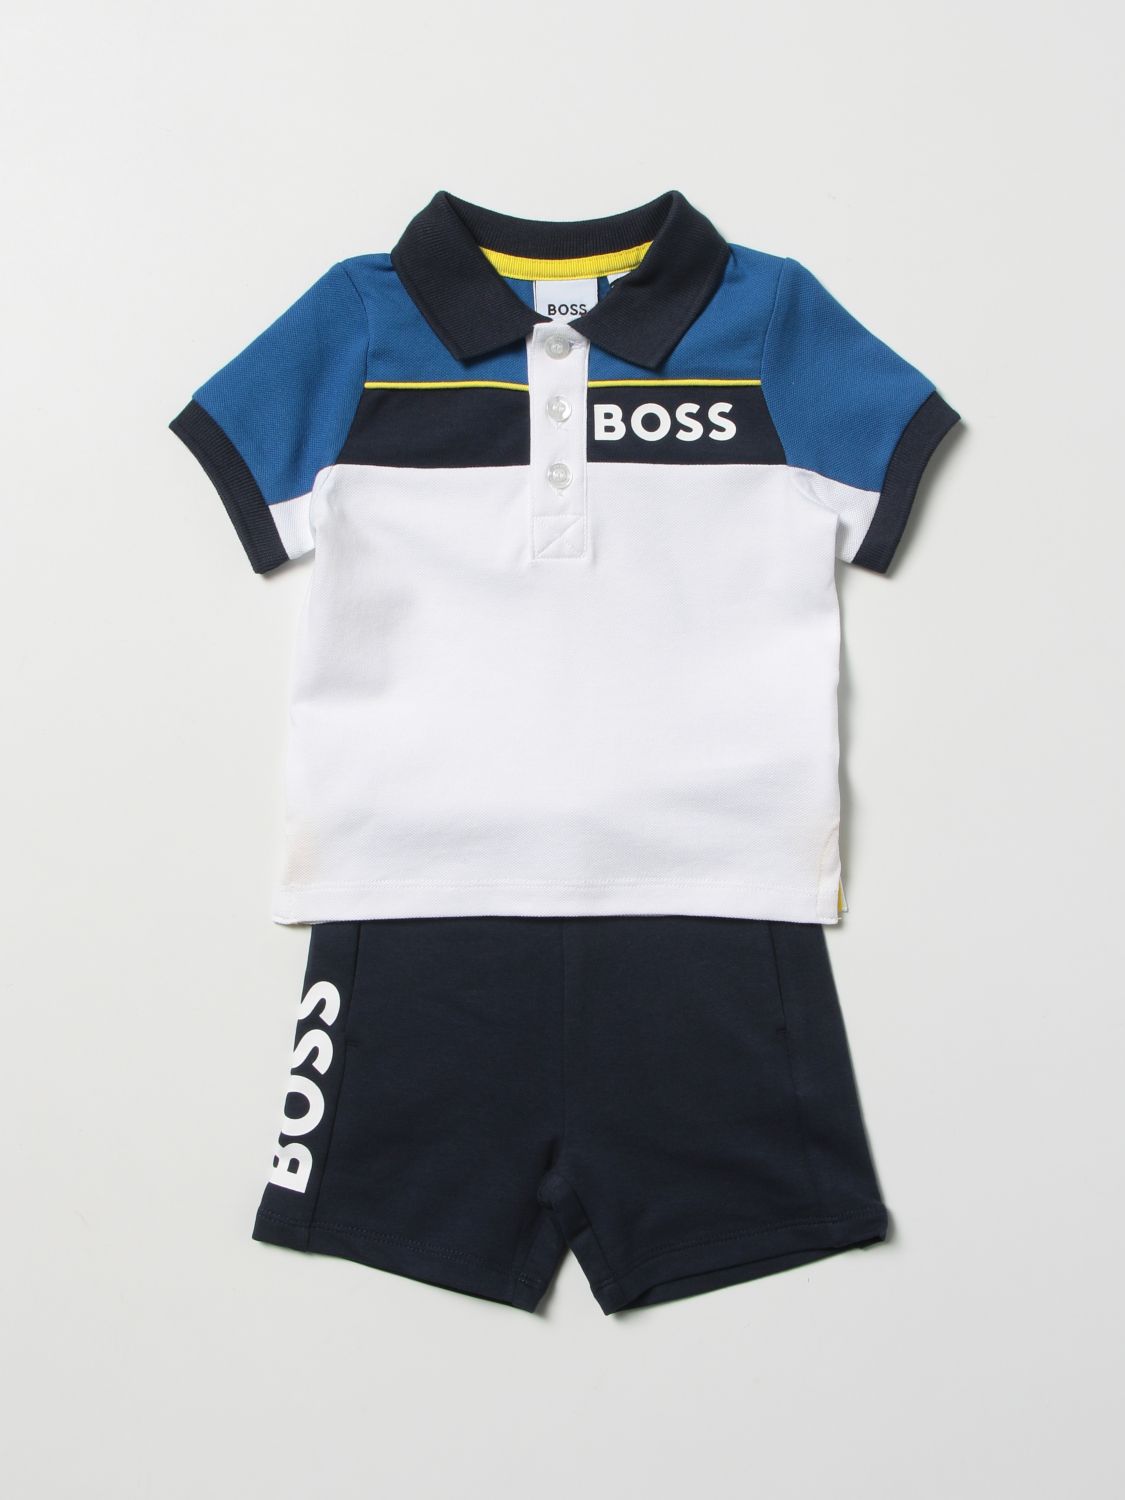 Completo Hugo Boss: T-shirt bambino Hugo Boss marine 1